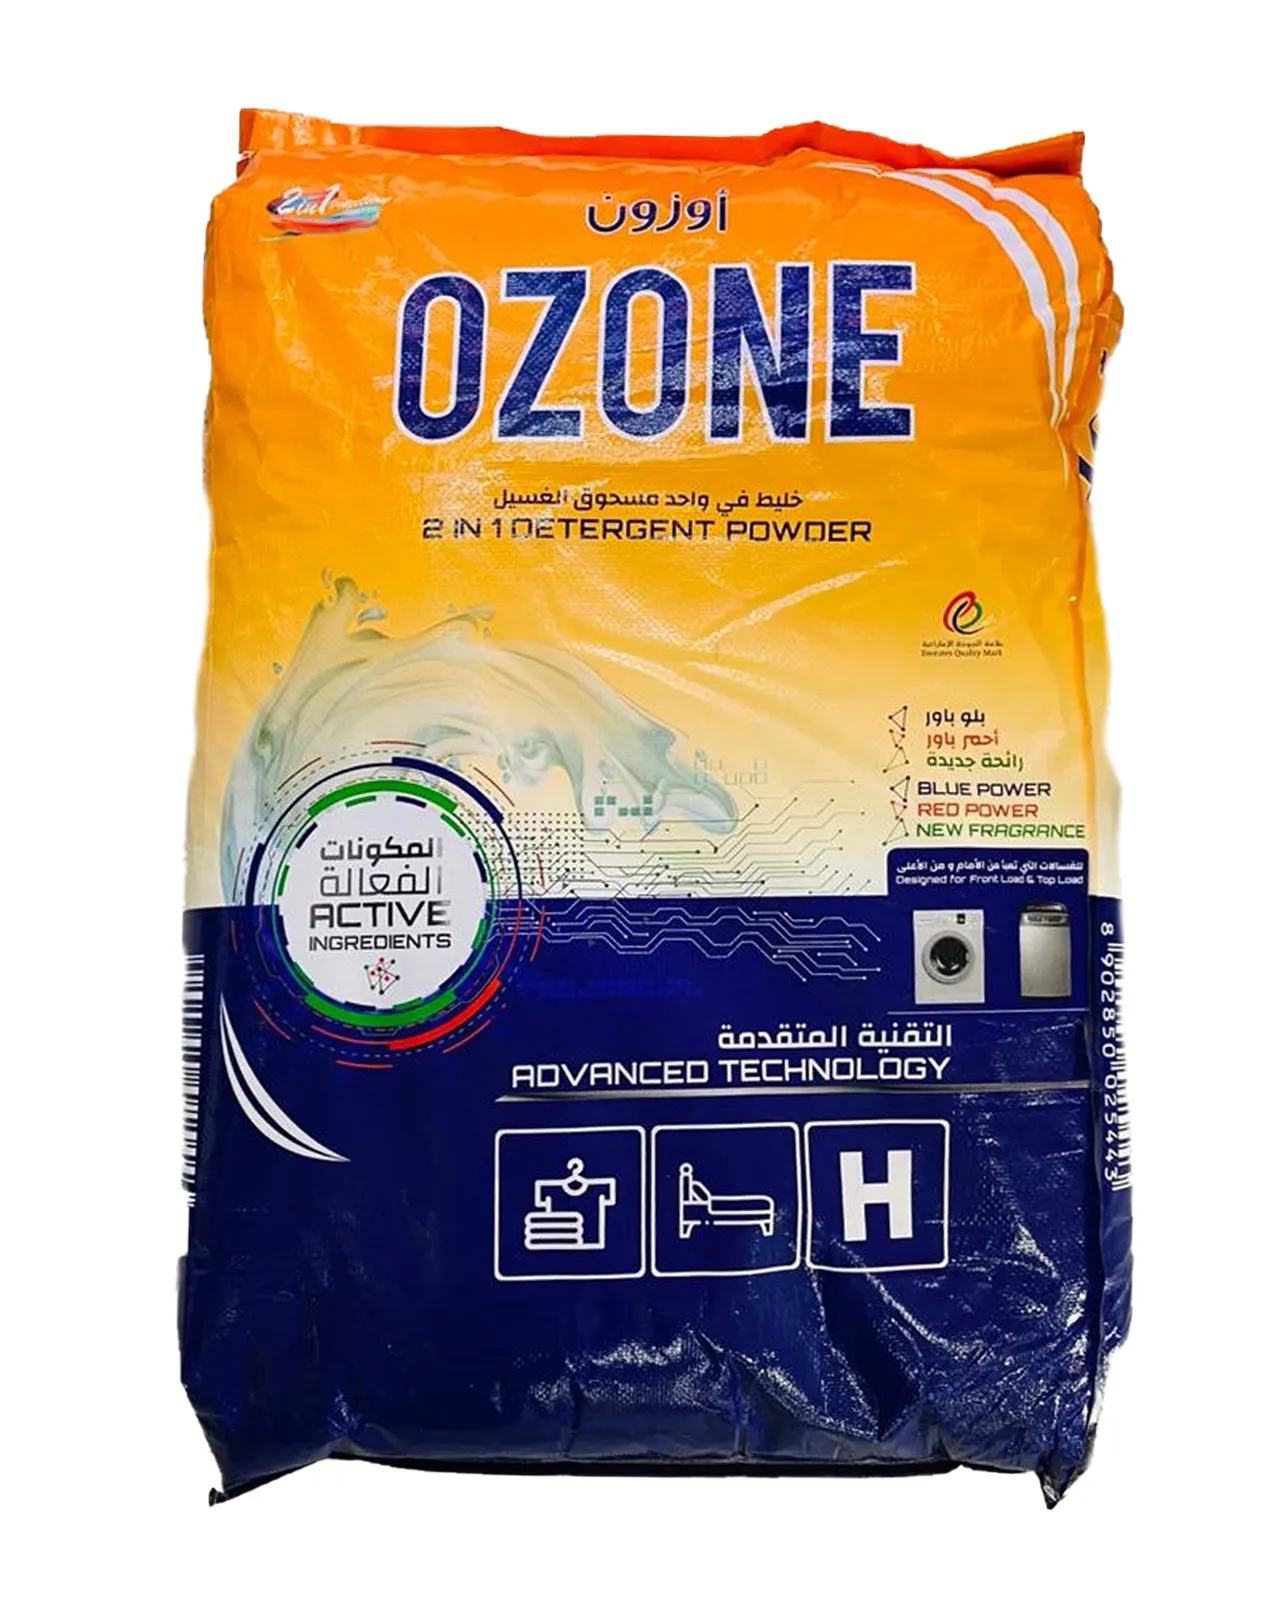 Ozone 2-in-1 Detergent Powder, 15Kg